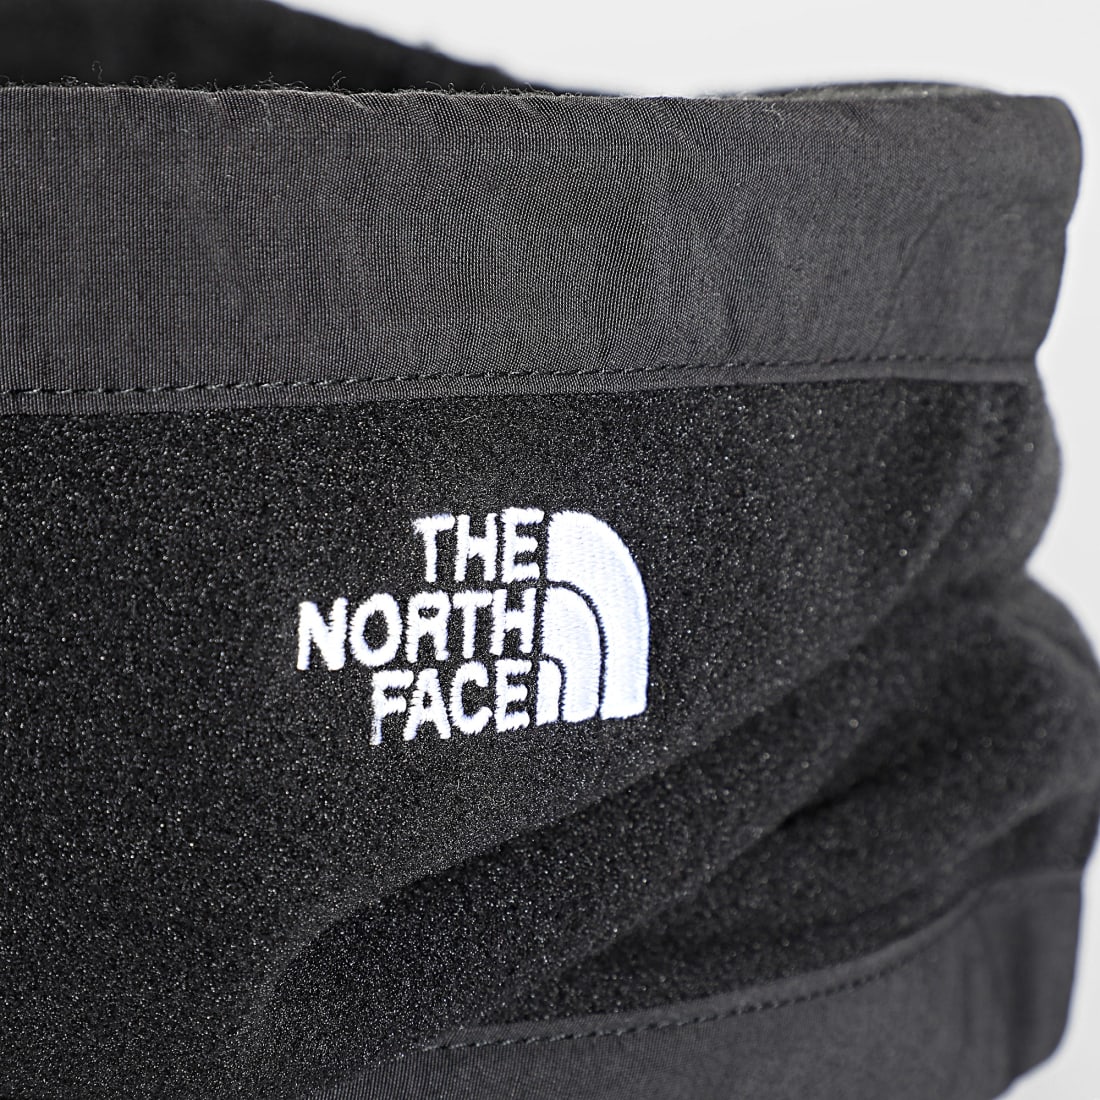 The North Face - Tour de cou - Noir